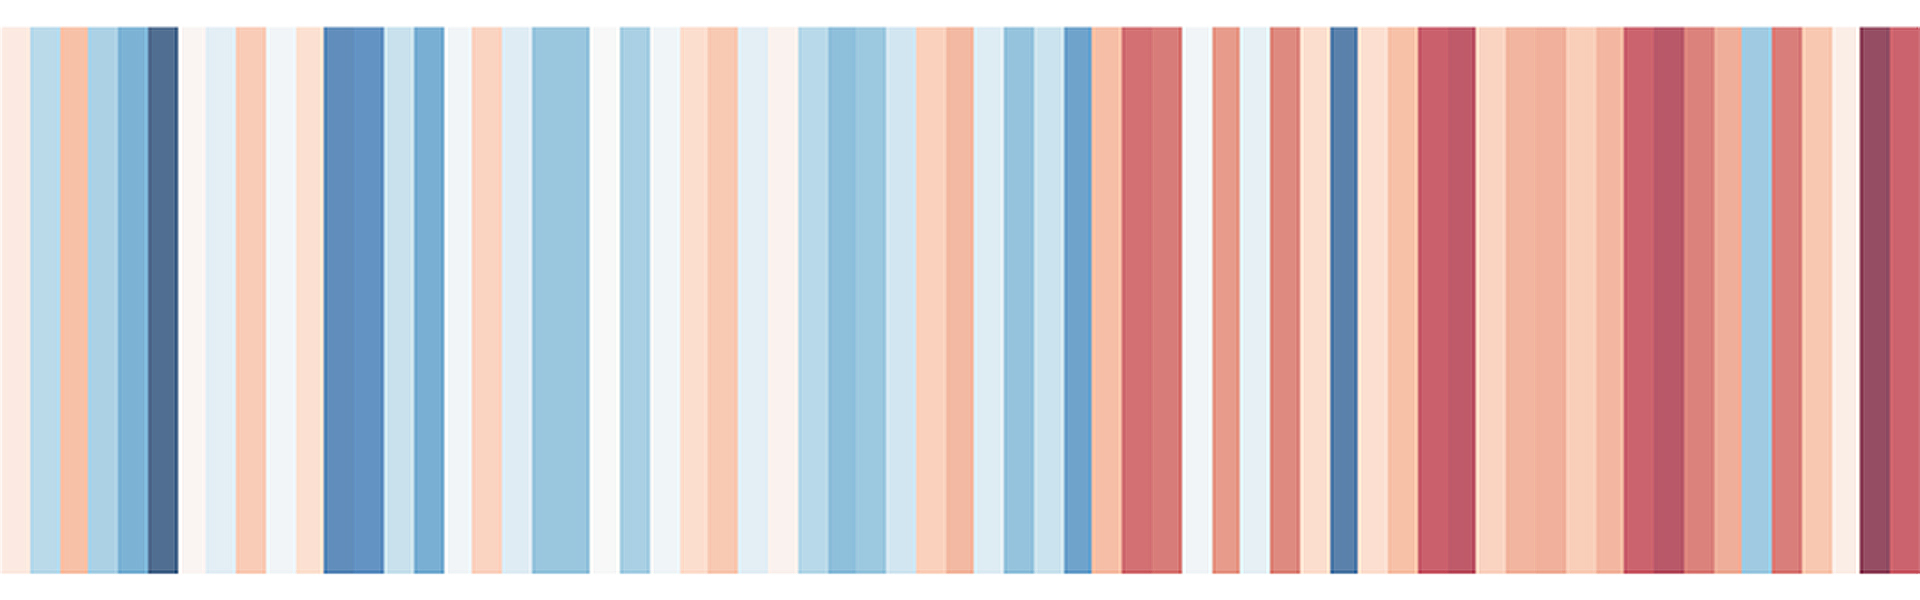 Schmale Streifen nebeneinander, in den Farben weiß über hellblau, blau, rosa bis hin zu rot zeigen langfristige Temperaturverläufe in der Stadt Wolfenbüttel.